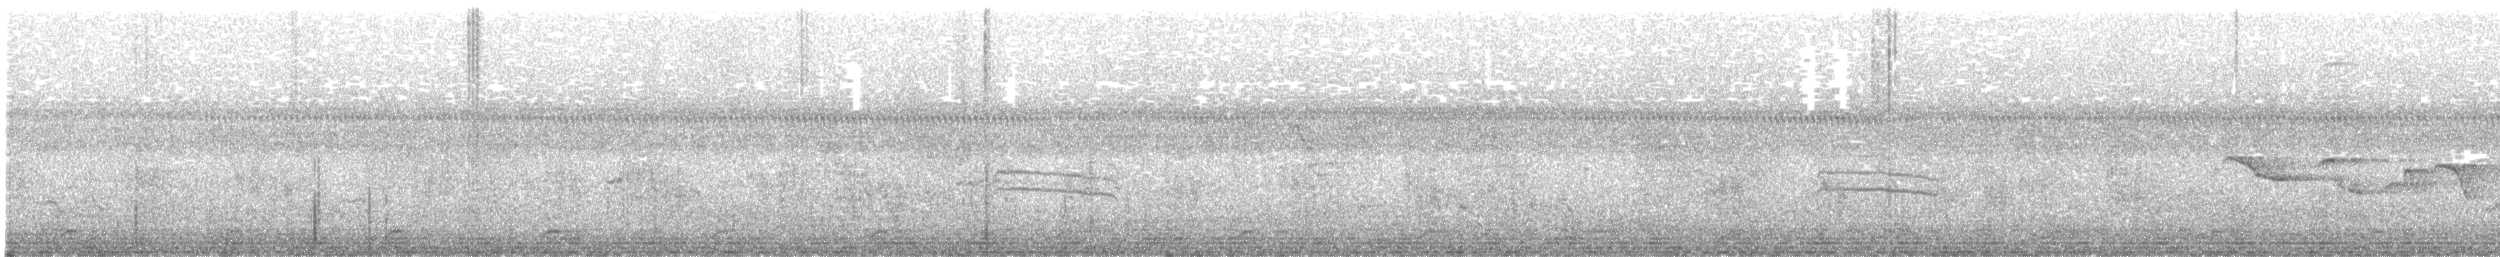 Ak Göğüslü Suyelvesi - ML596973591